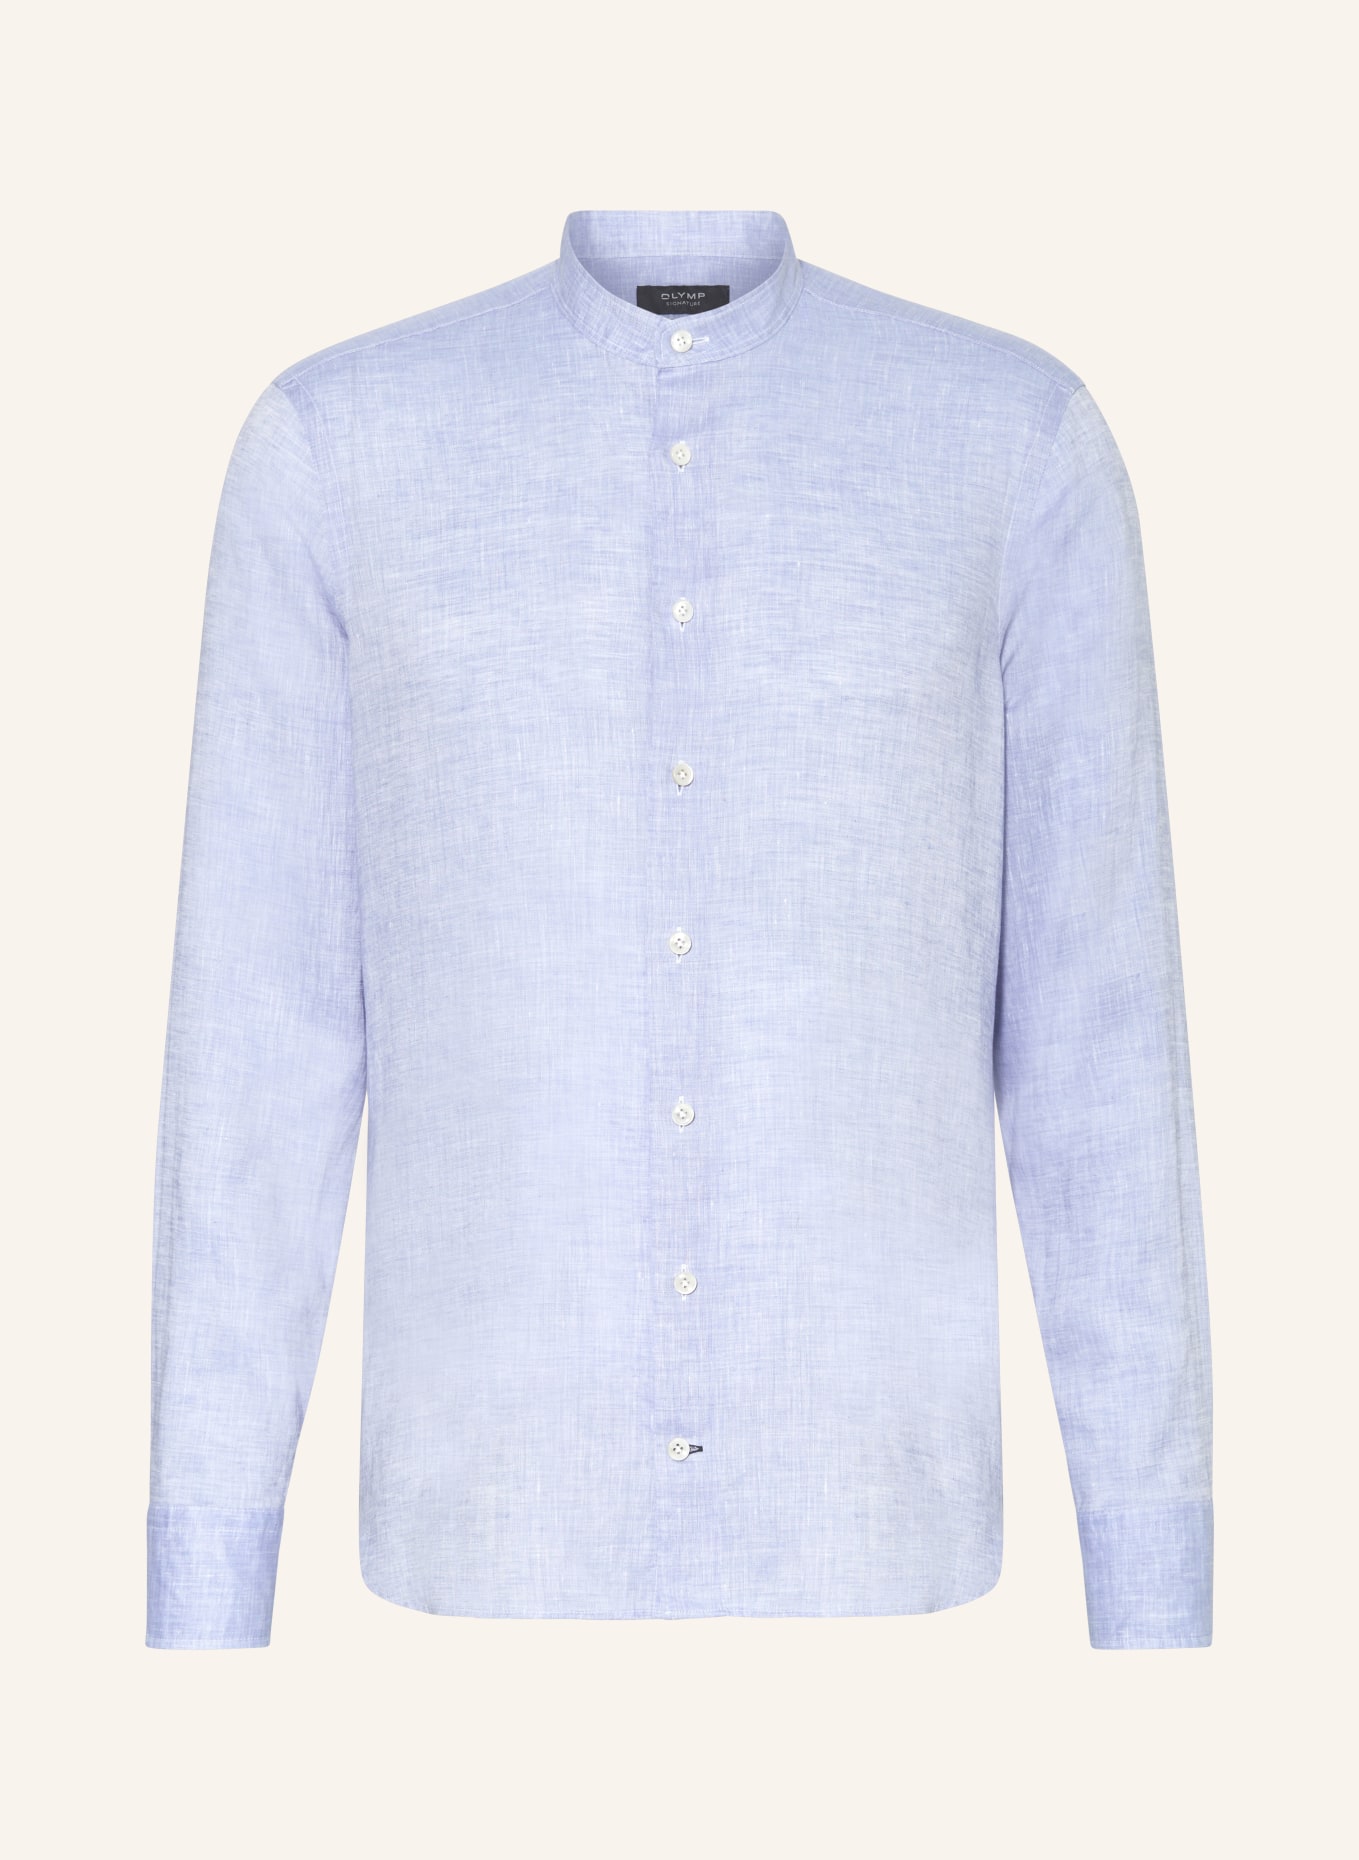 OLYMP SIGNATURE Leinenhemd Tailored Fit mit Stehkragen, Farbe: HELLBLAU (Bild 1)